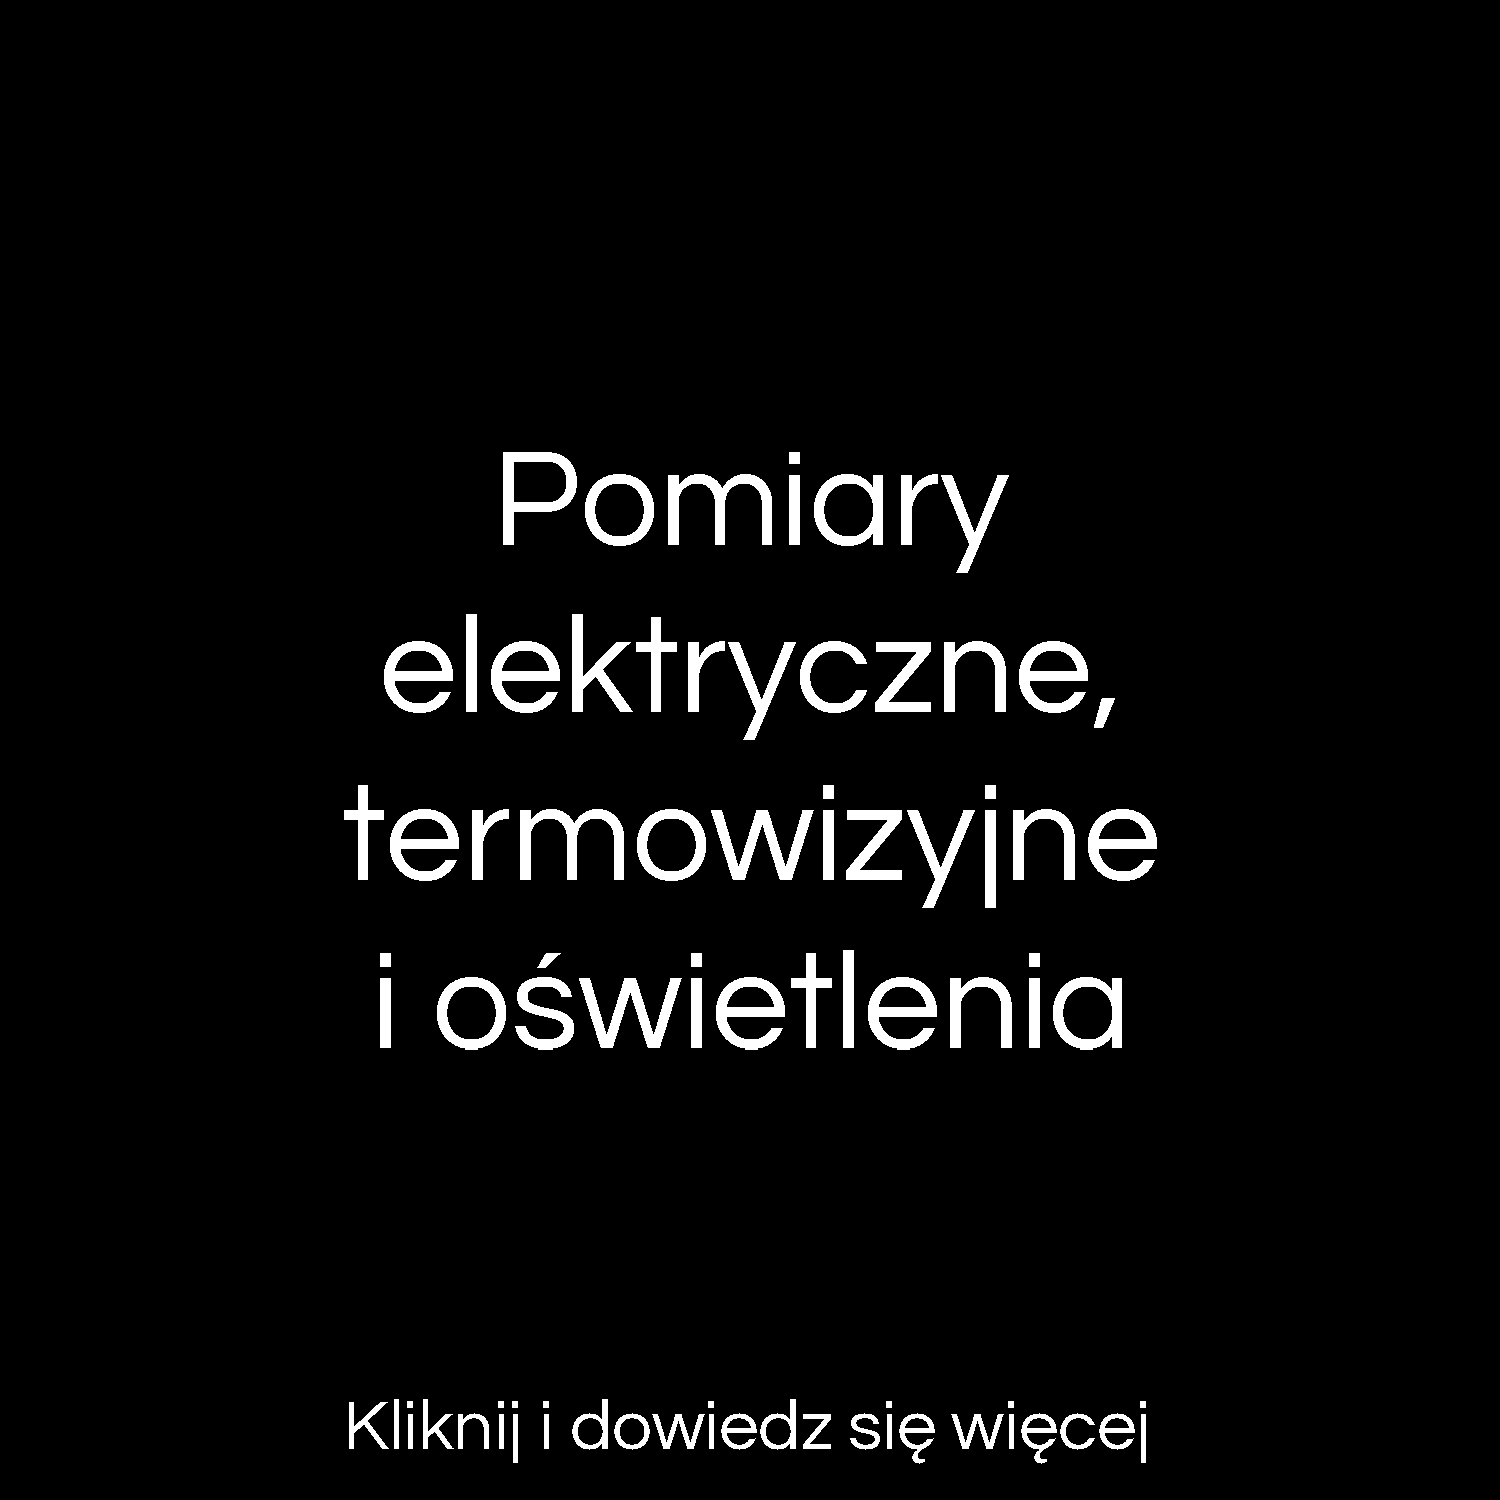  Pomiary elektryczne Lubliniec